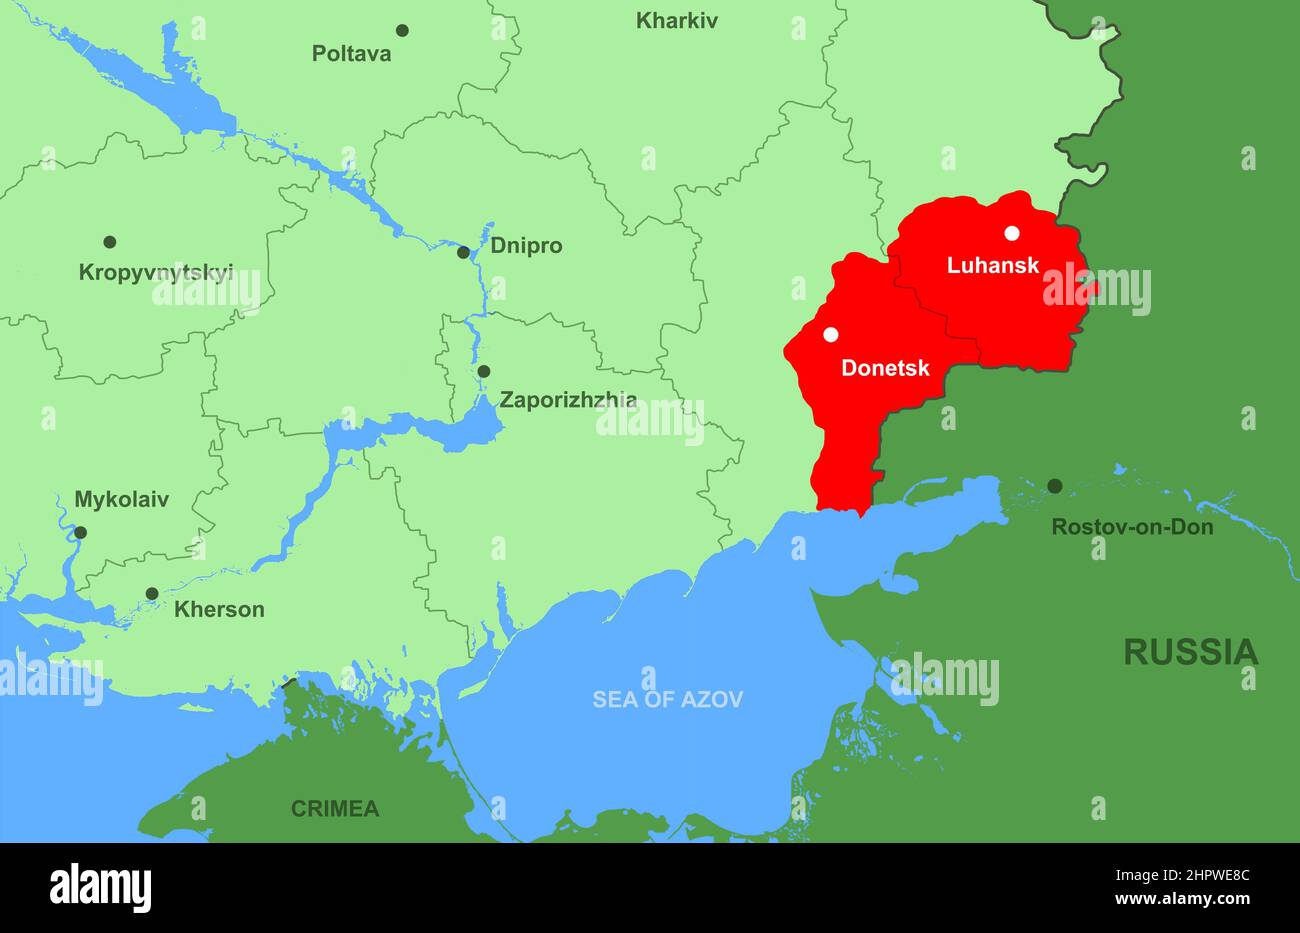 Région de l'Ukraine et du Donbass sur la carte de l'Europe en gros plan. Carte politique avec les républiques de Donetsk et de Luhansk, frontière russe, Crimée, mer d'Azov. Conc Banque D'Images